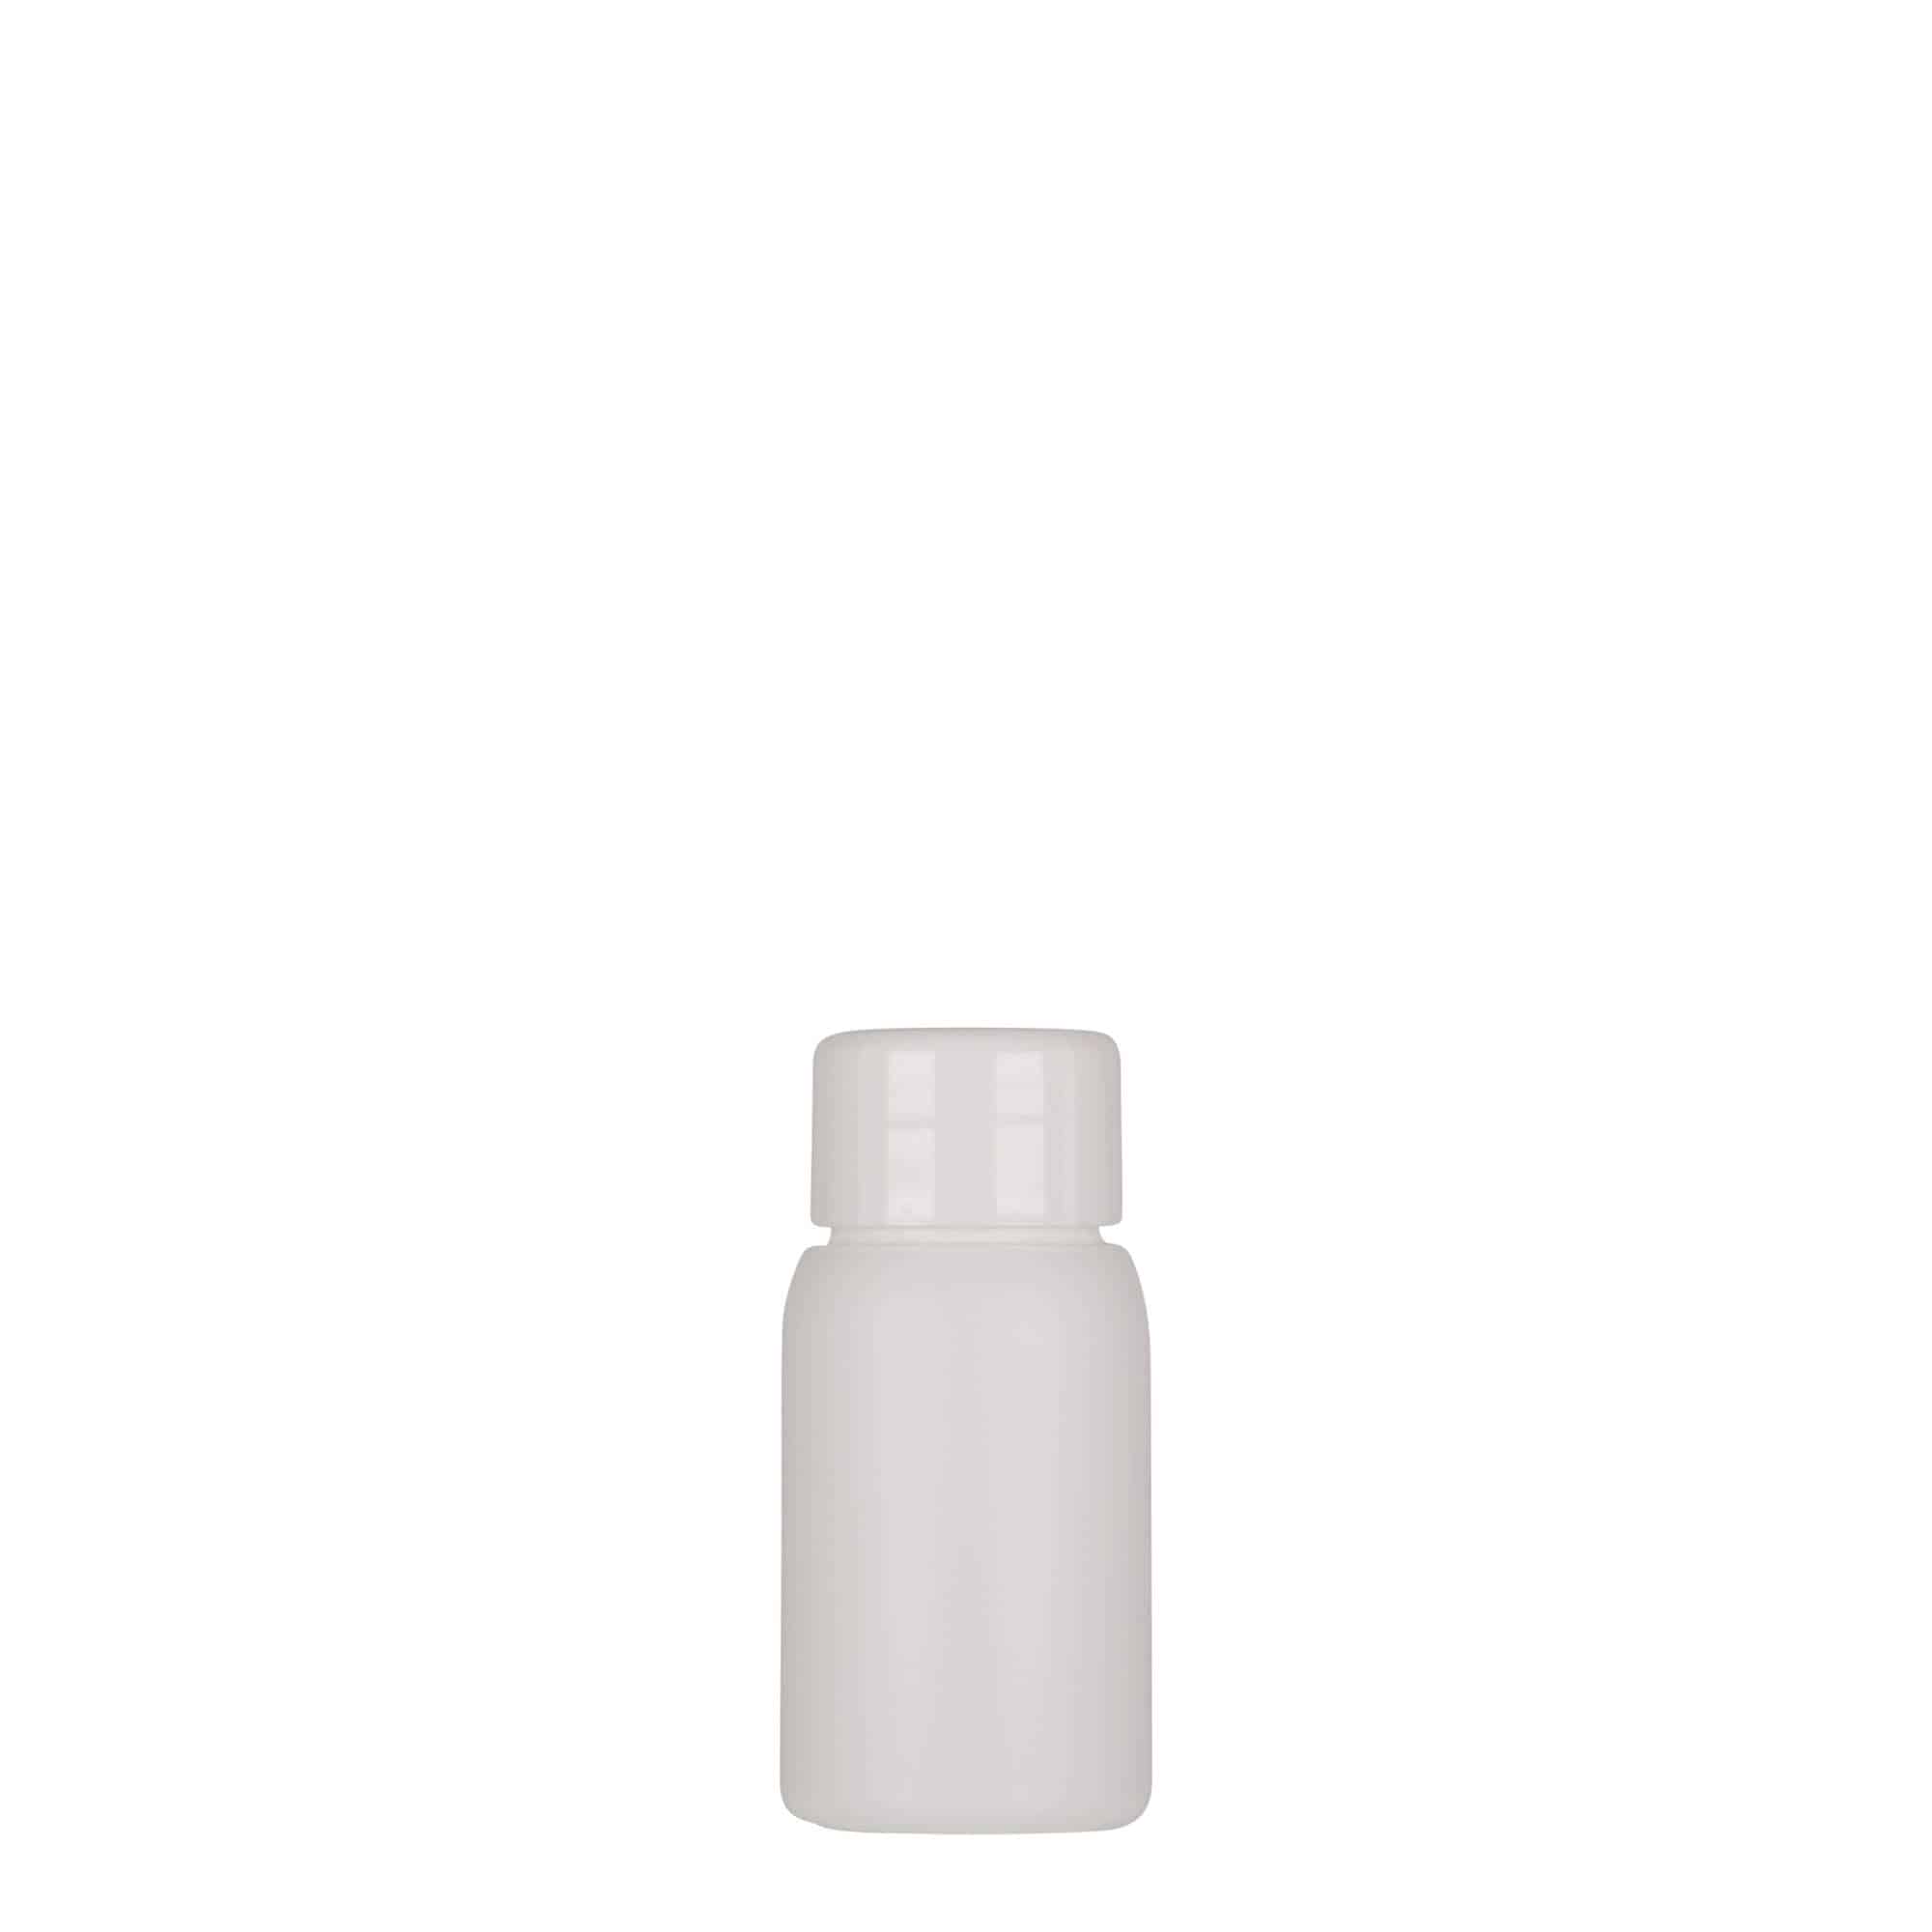 30 ml butelka z tworzywa sztucznego 'Tuffy', HDPE, kolor biały, zamknięcie: GPI 24/410